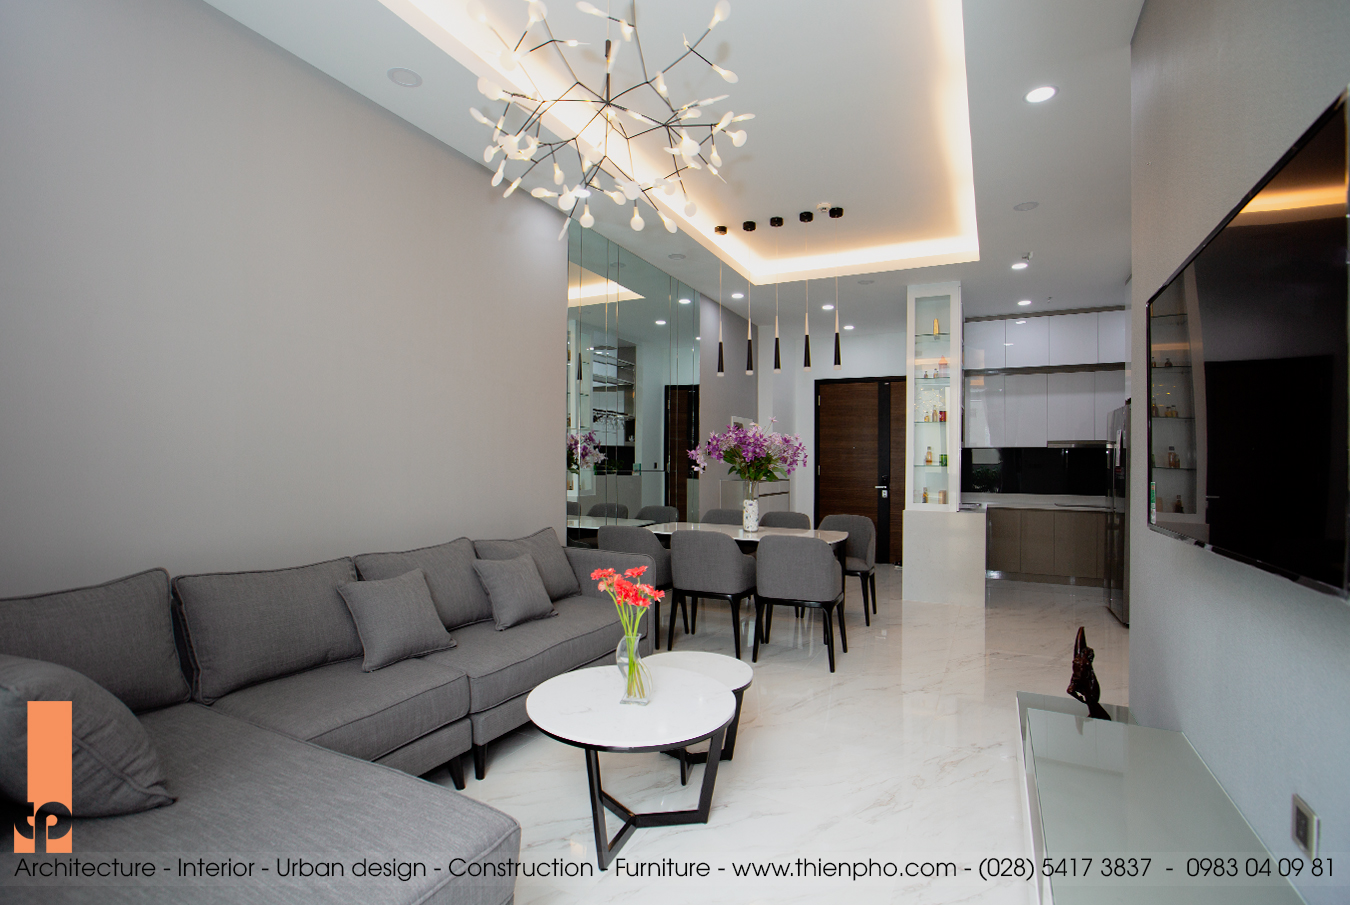 Hình ảnh thi công hoàn thiện nội thất căn hộ A4-02 Midtown, Phú Mỹ Hưng